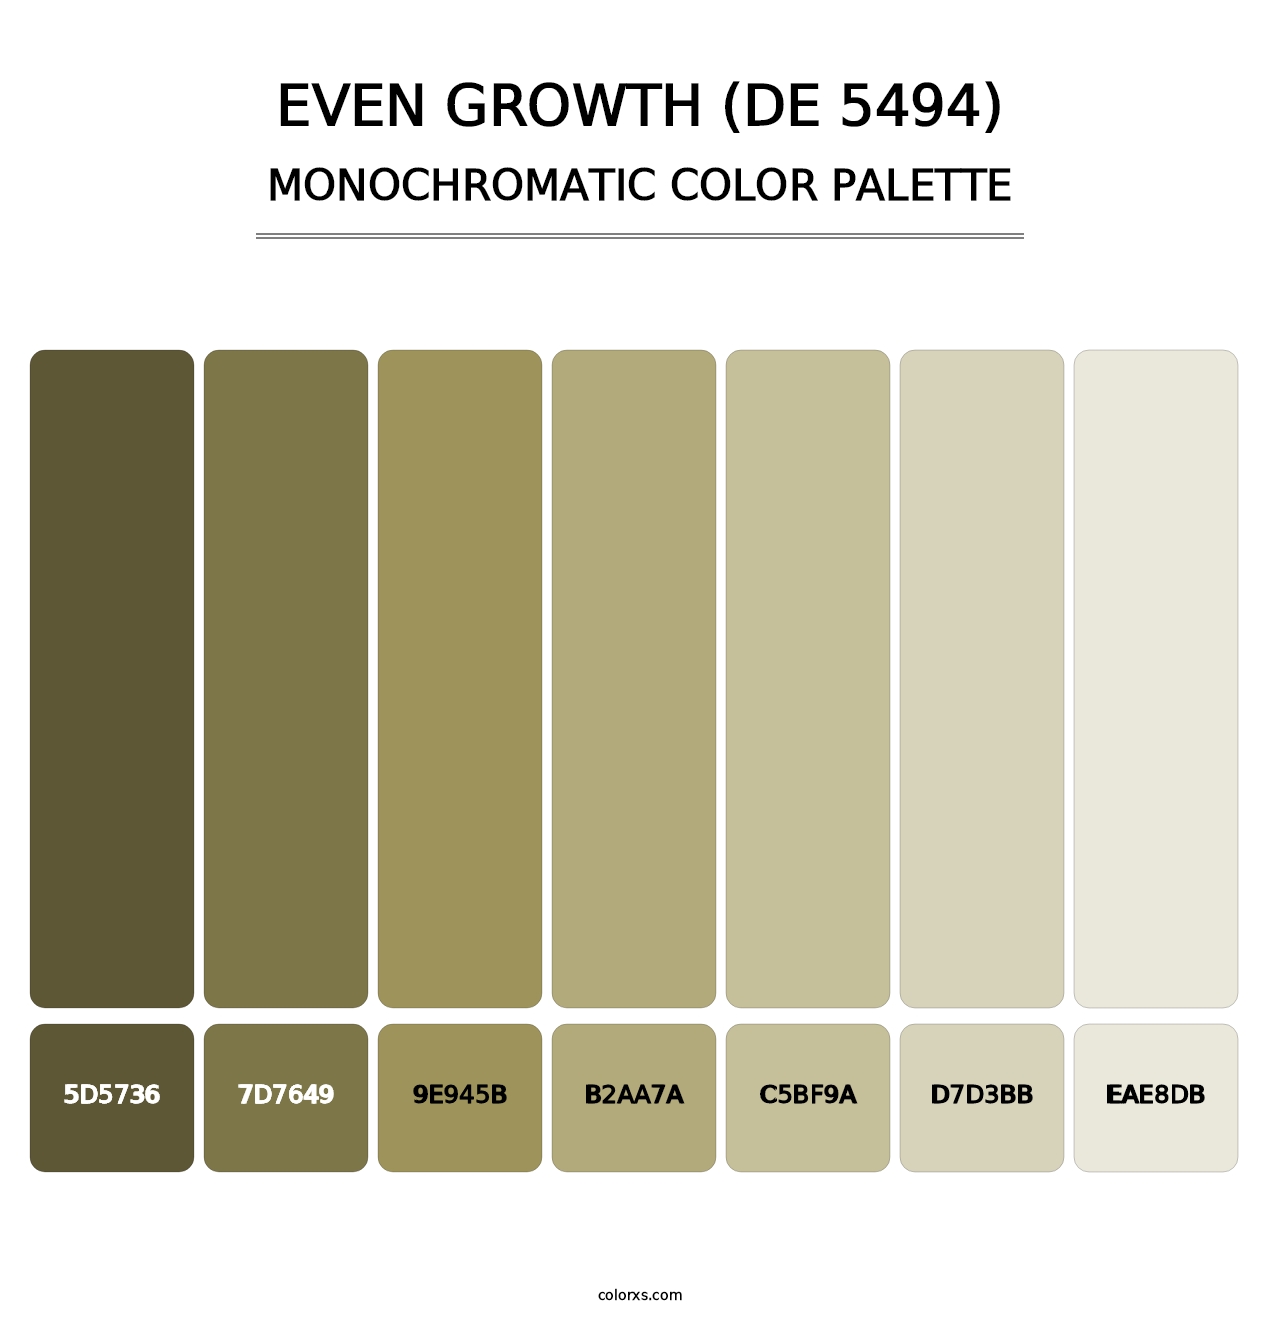 Even Growth (DE 5494) - Monochromatic Color Palette